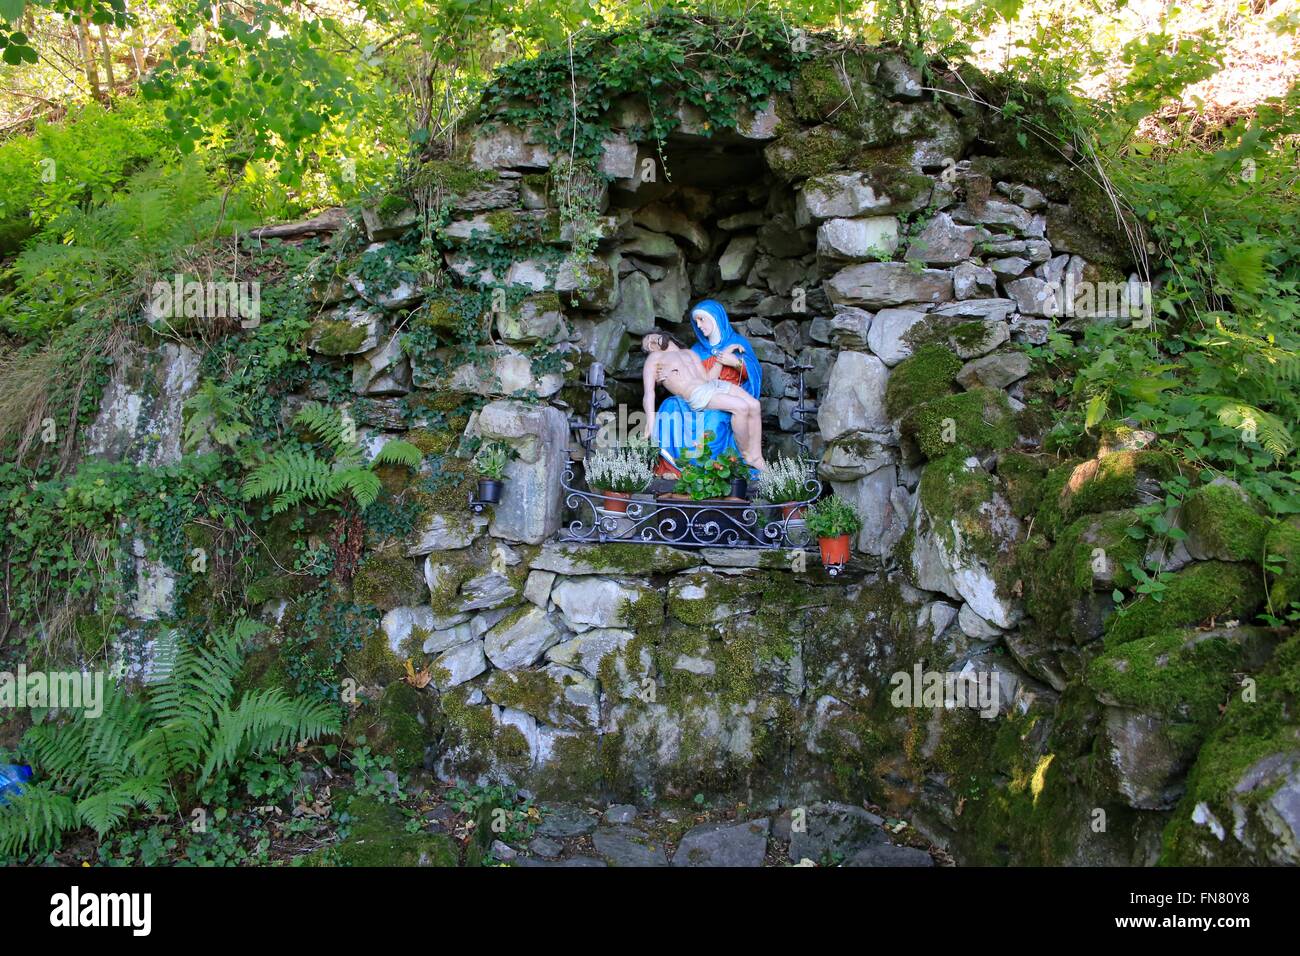 Mary's Grotto vers l'Milseburg. À la montagne sont les vestiges d'un mur de l'anneau celtique et plusieurs Annexe remparts. Réserve de biosphère de l'UNESCO, Kleinsassen Rhoen, Hesse, Germany, Europe Date : 30 Septembre, 2015 Banque D'Images